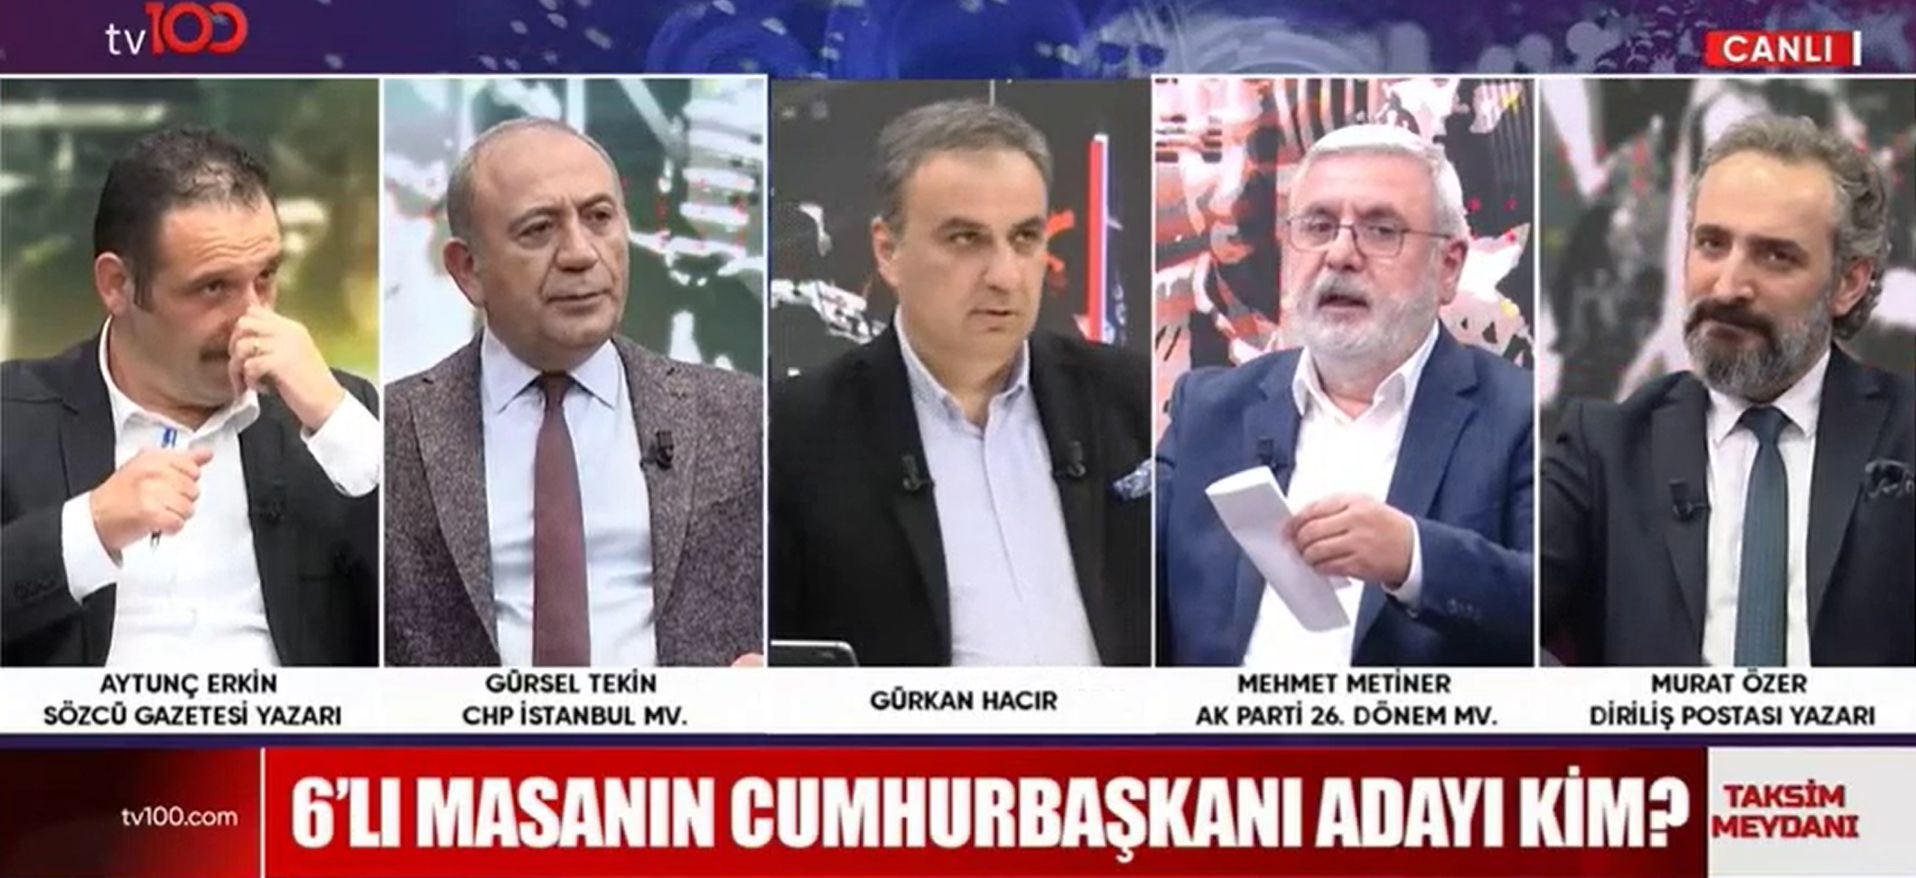 Erdoğan olmazsa Mehmet Metiner'in oyu Gürsel Tekin'e